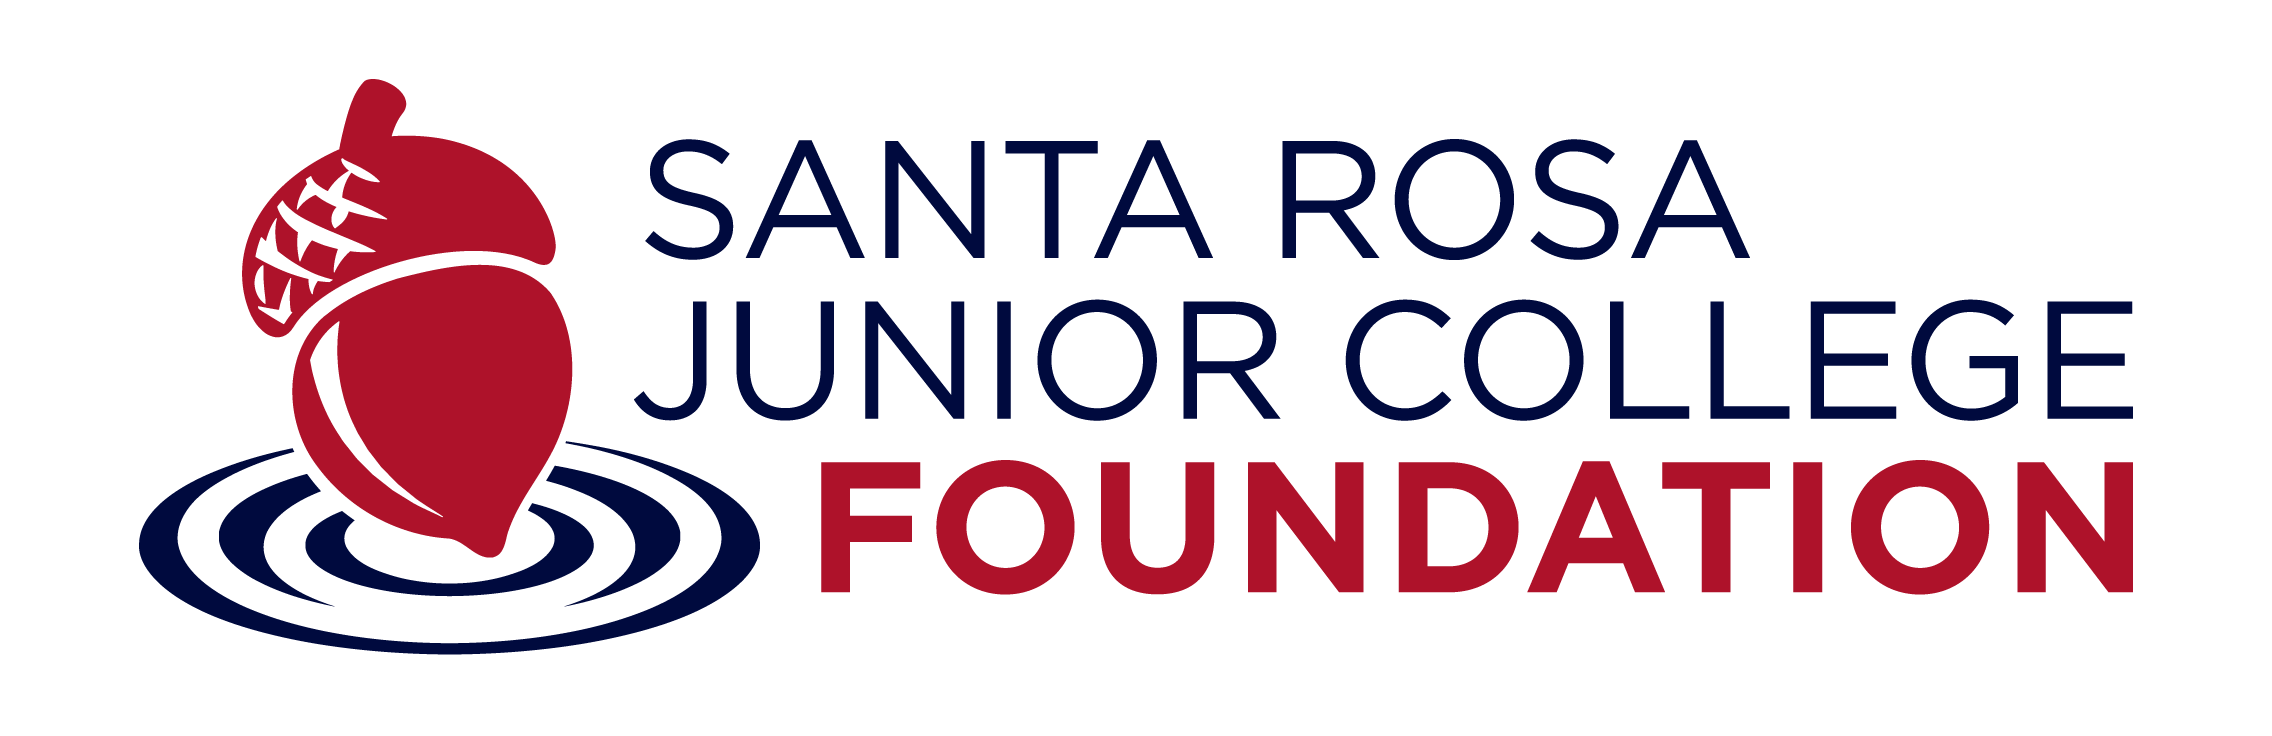 Santa Rosa Junior College Foundation